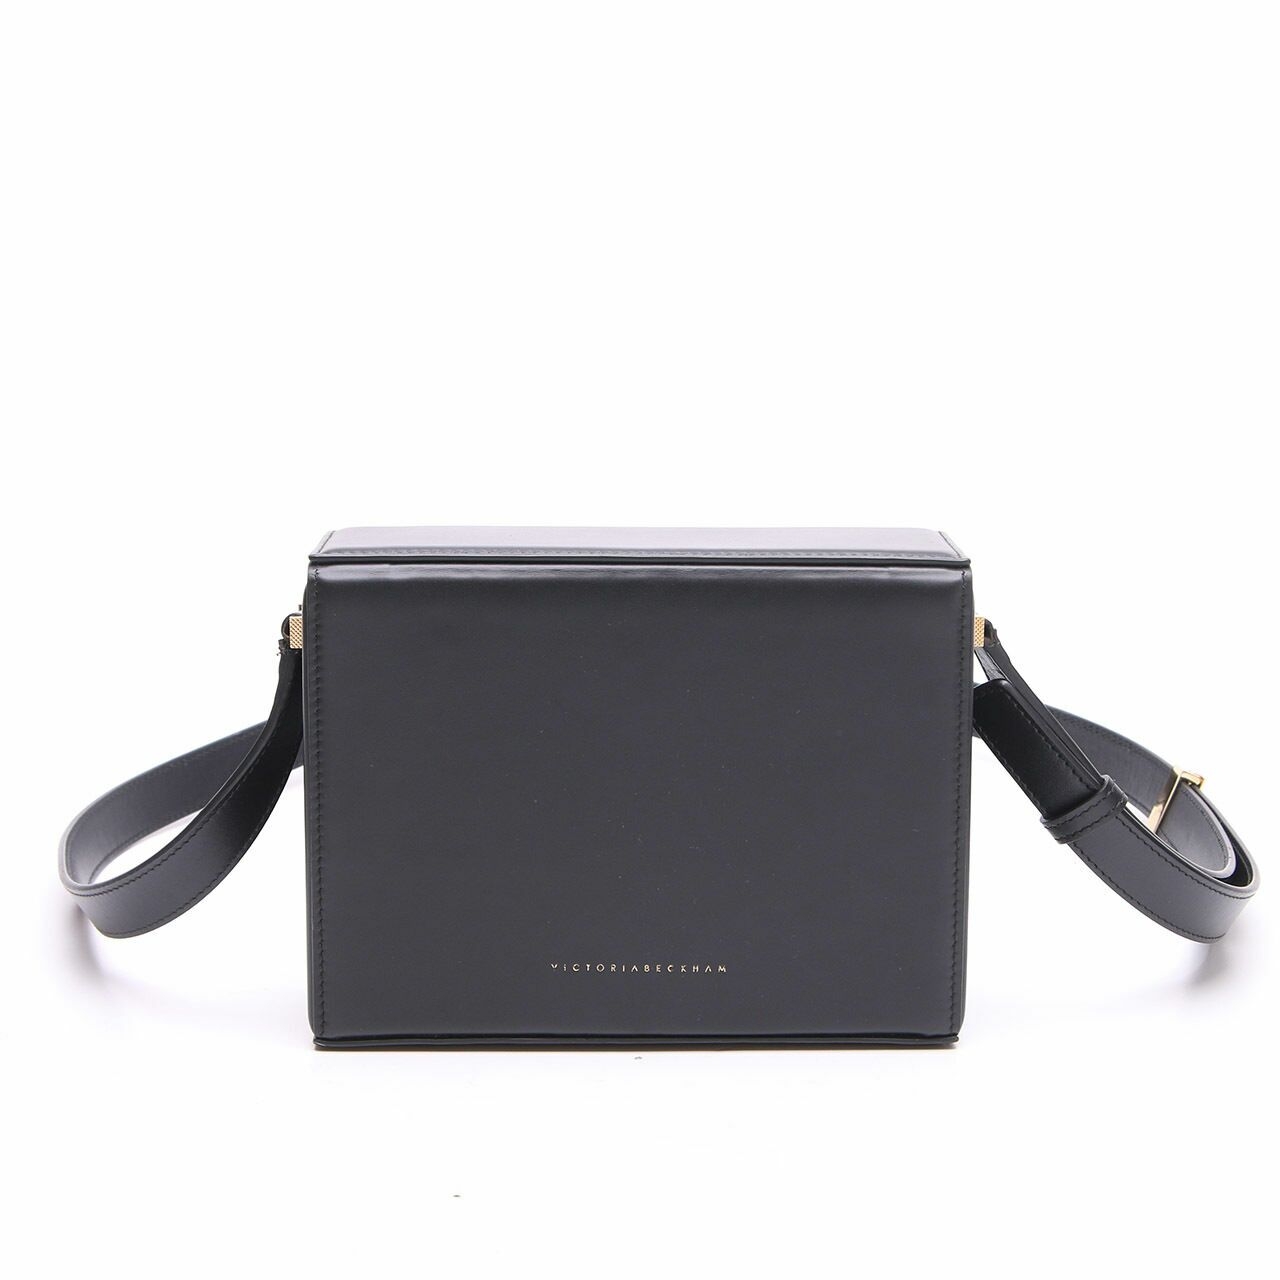 Victoria Beckham Vanity Black Leather Sling Bag